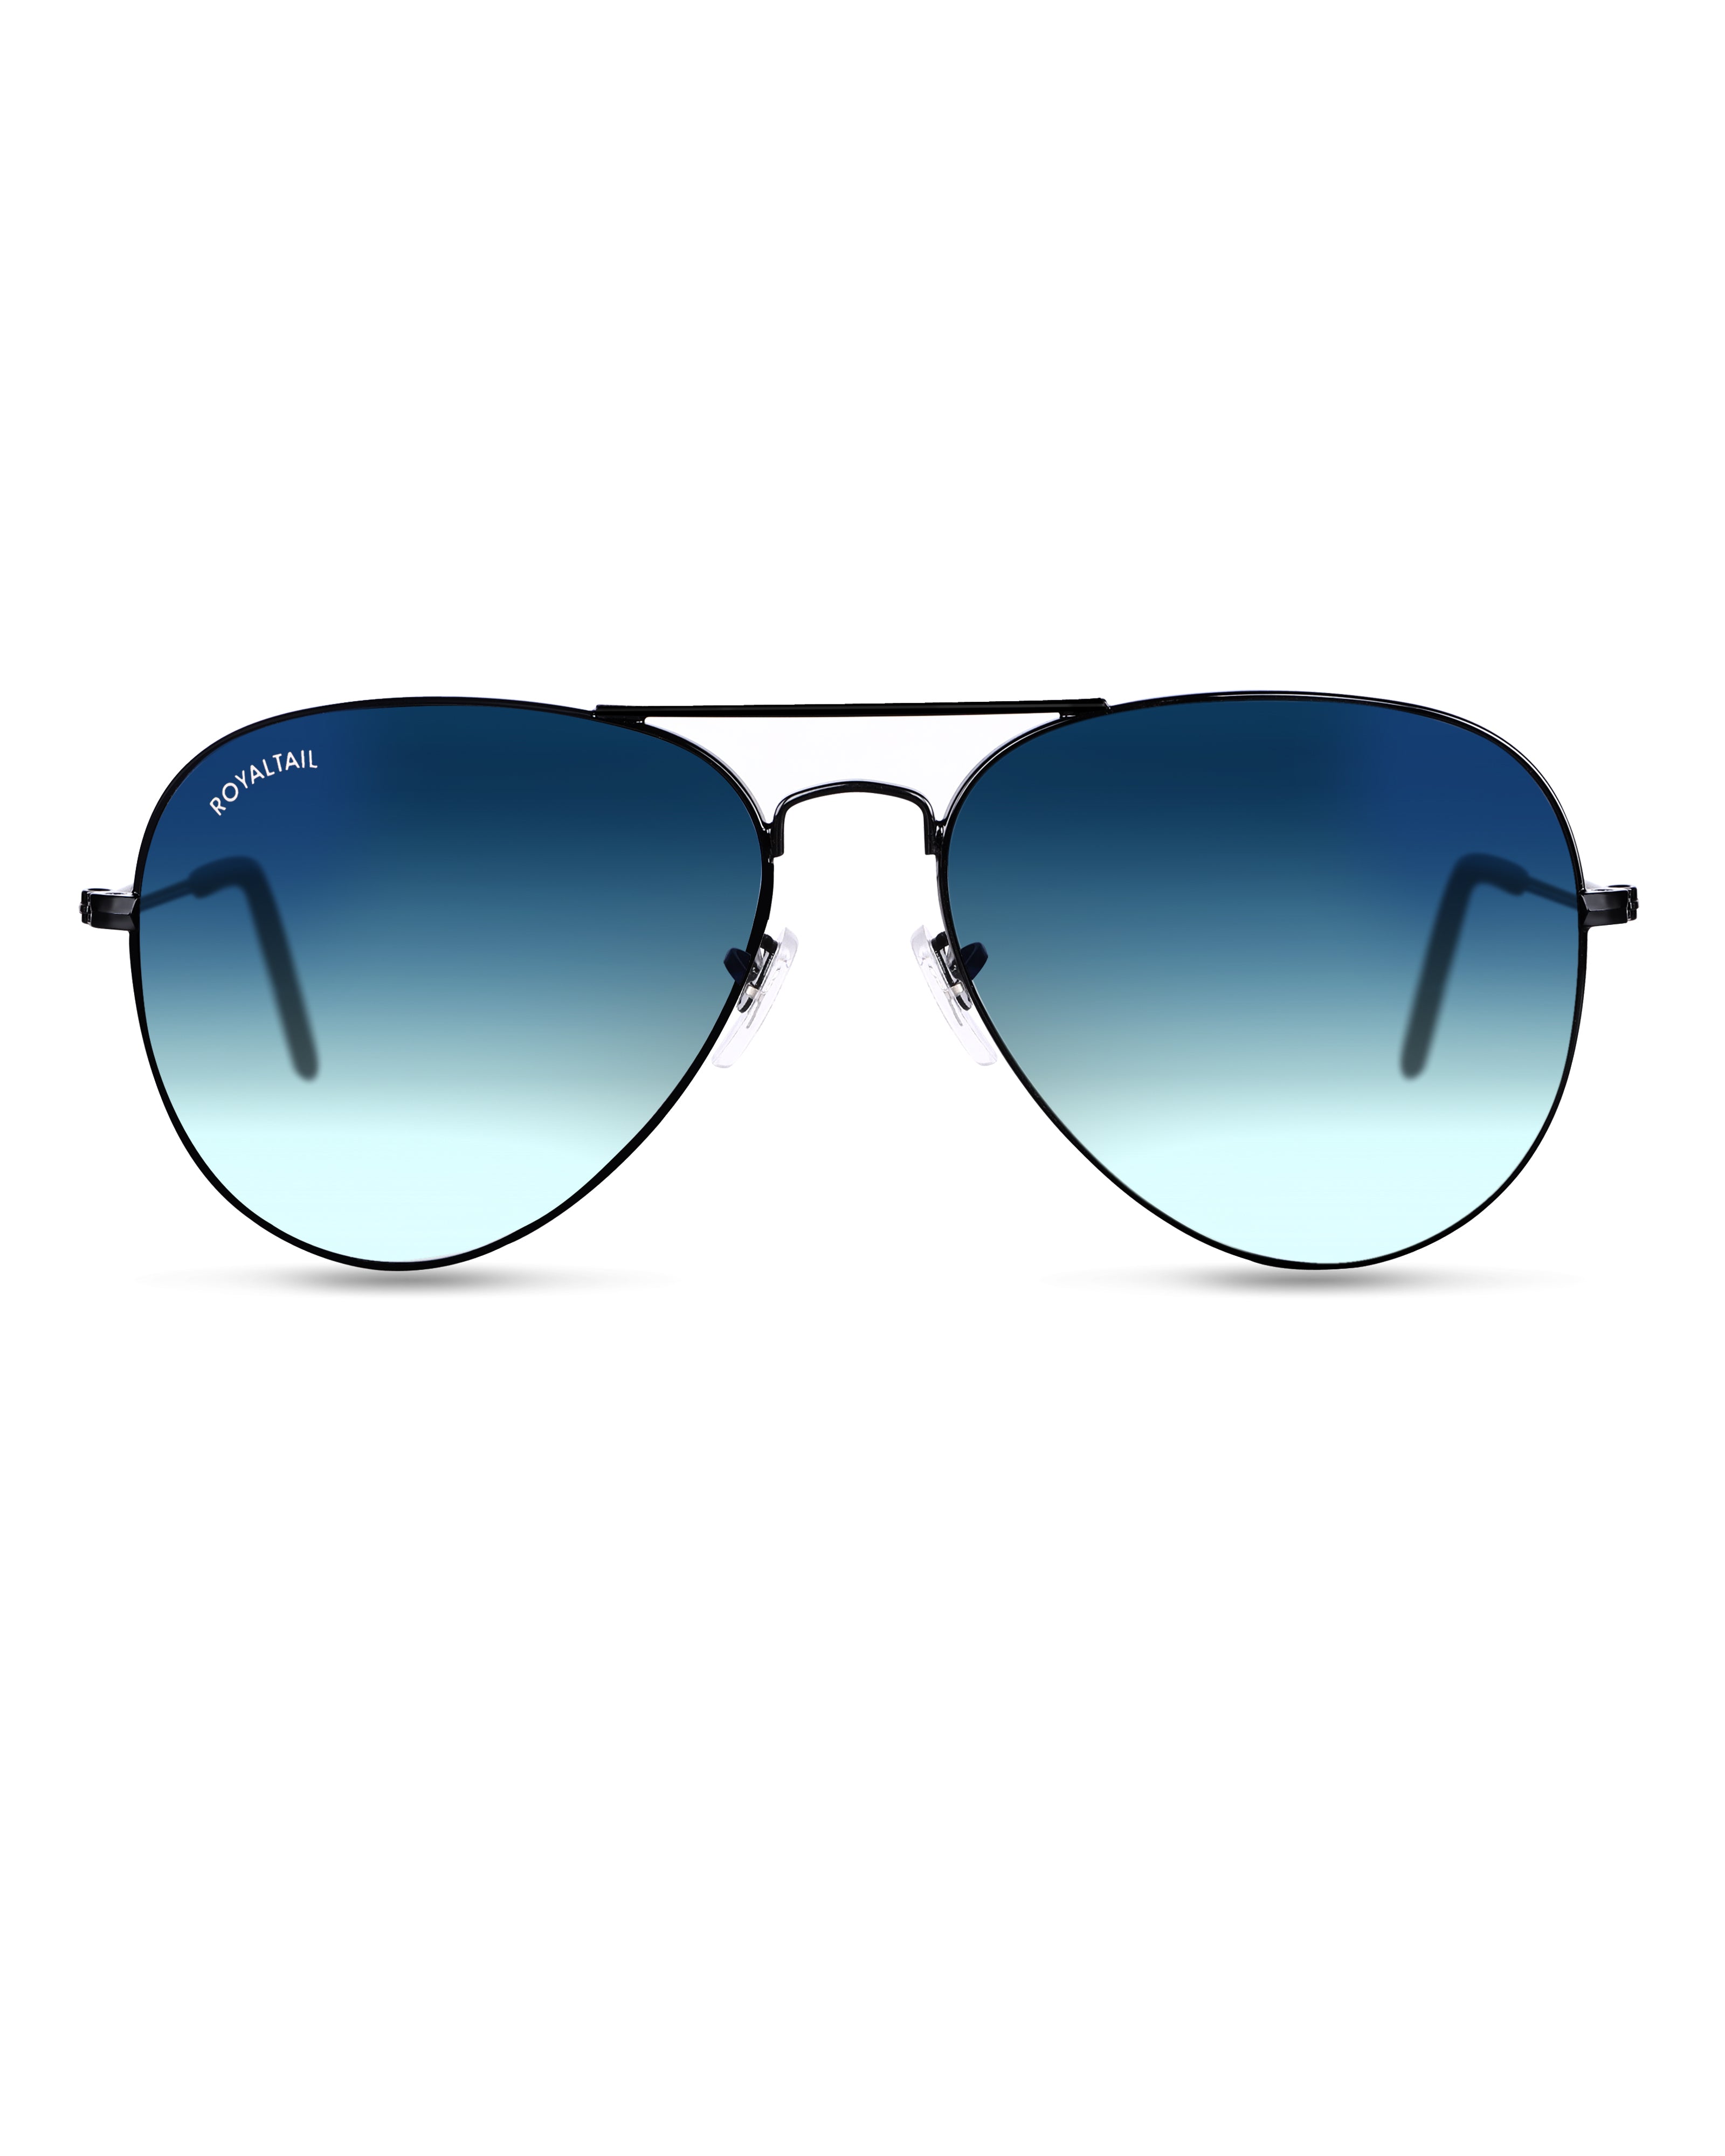 Buy Bella Aviator Sunglasses - Forever New